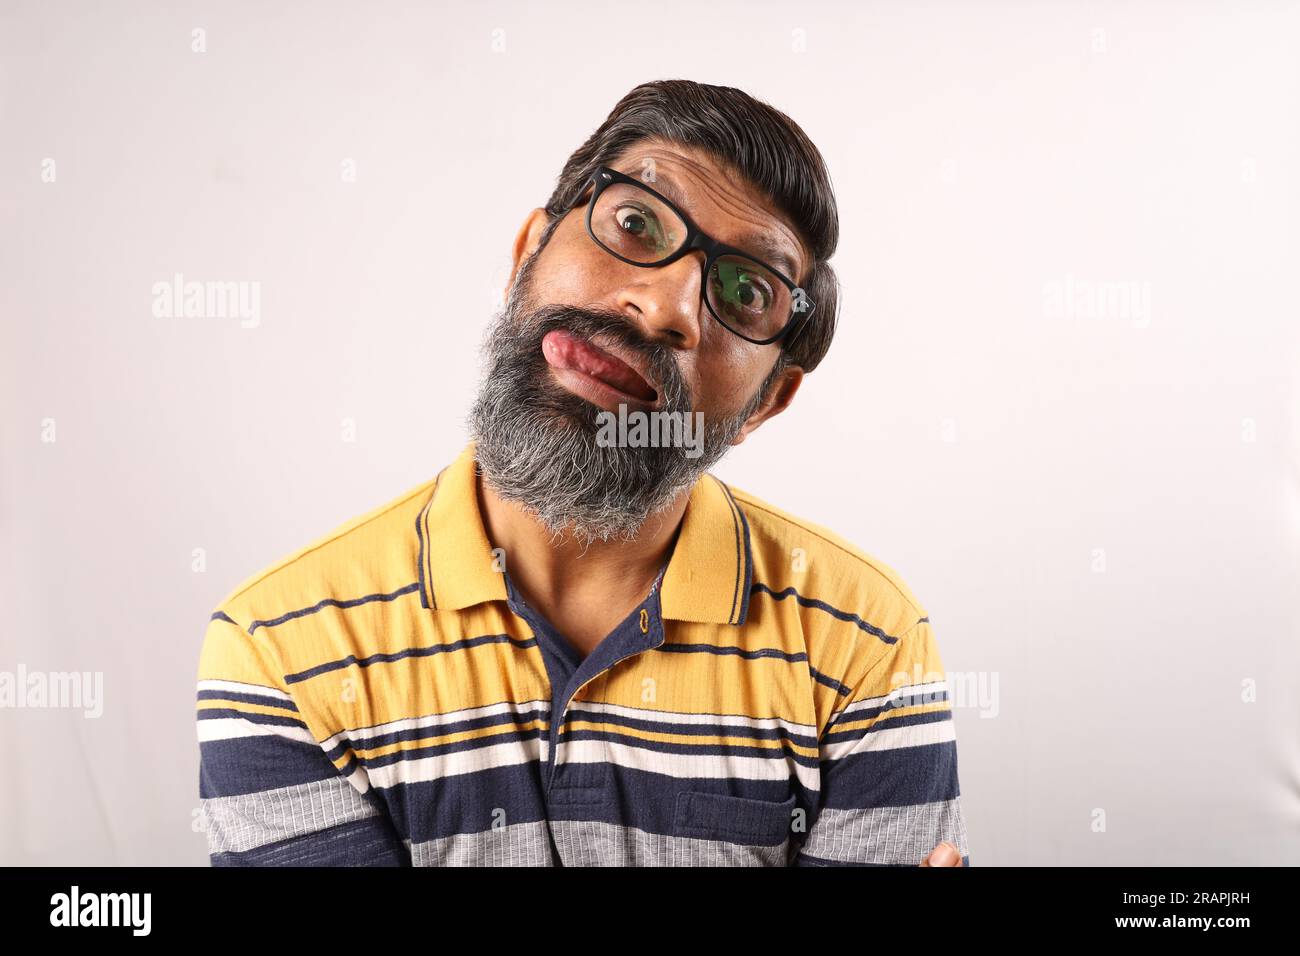 Ritratto di un uomo indiano barbuto che indossa occhiali e t-shirt. Espressioni funky volto distorto. Uomo sbalordito che mostra vari stati d'animo di stravagante personalità. Foto Stock